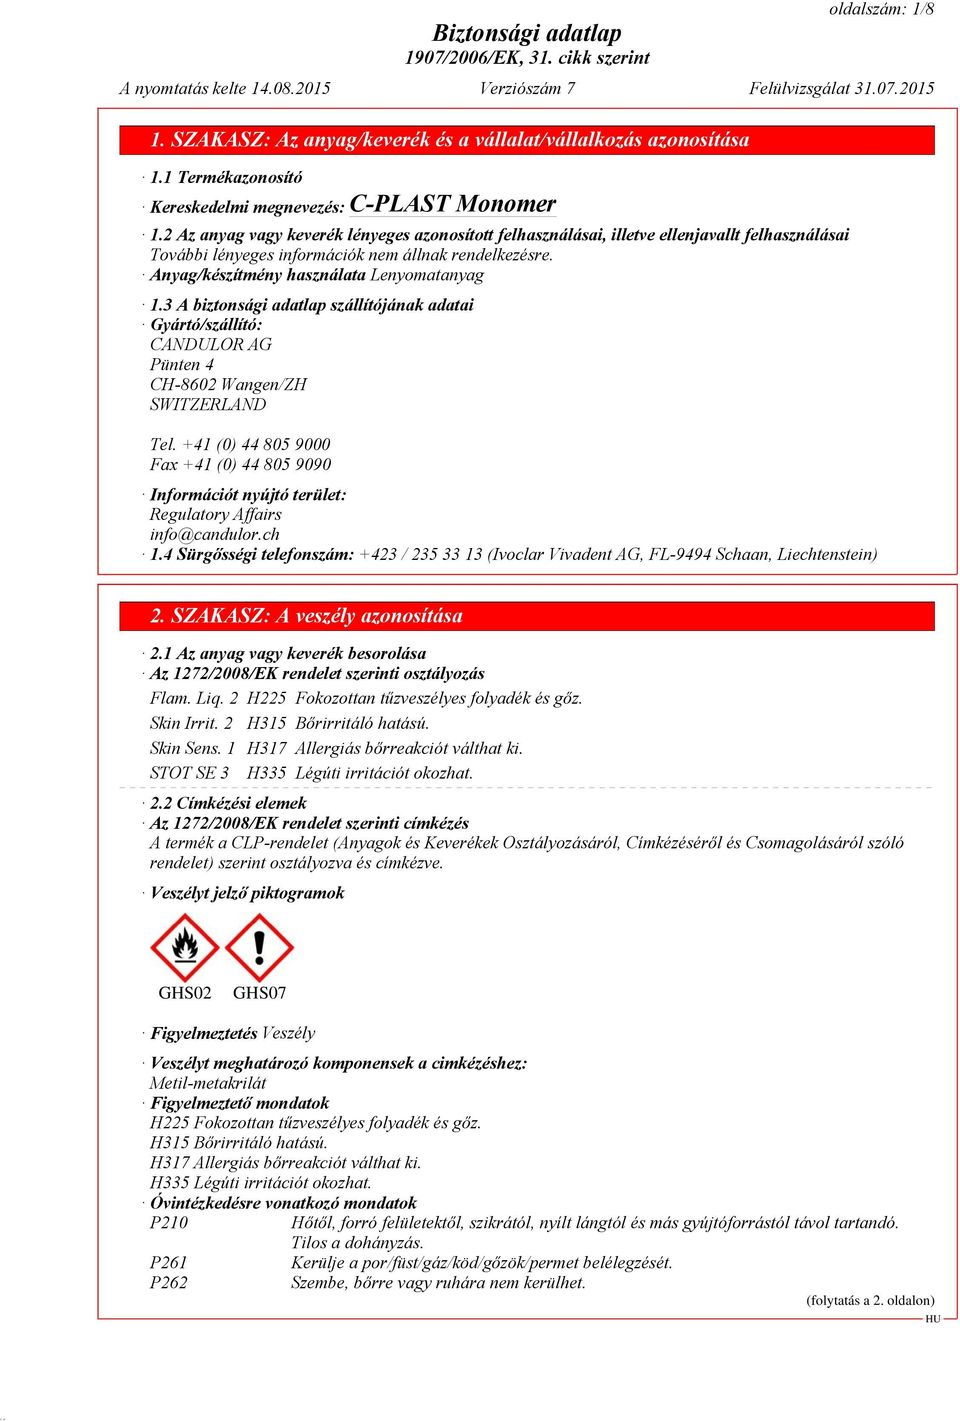 3 A biztonsági adatlap szállítójának adatai Gyártó/szállító: CANDULOR AG Pünten 4 CH-8602 Wangen/ZH SWITZERLAND Tel.